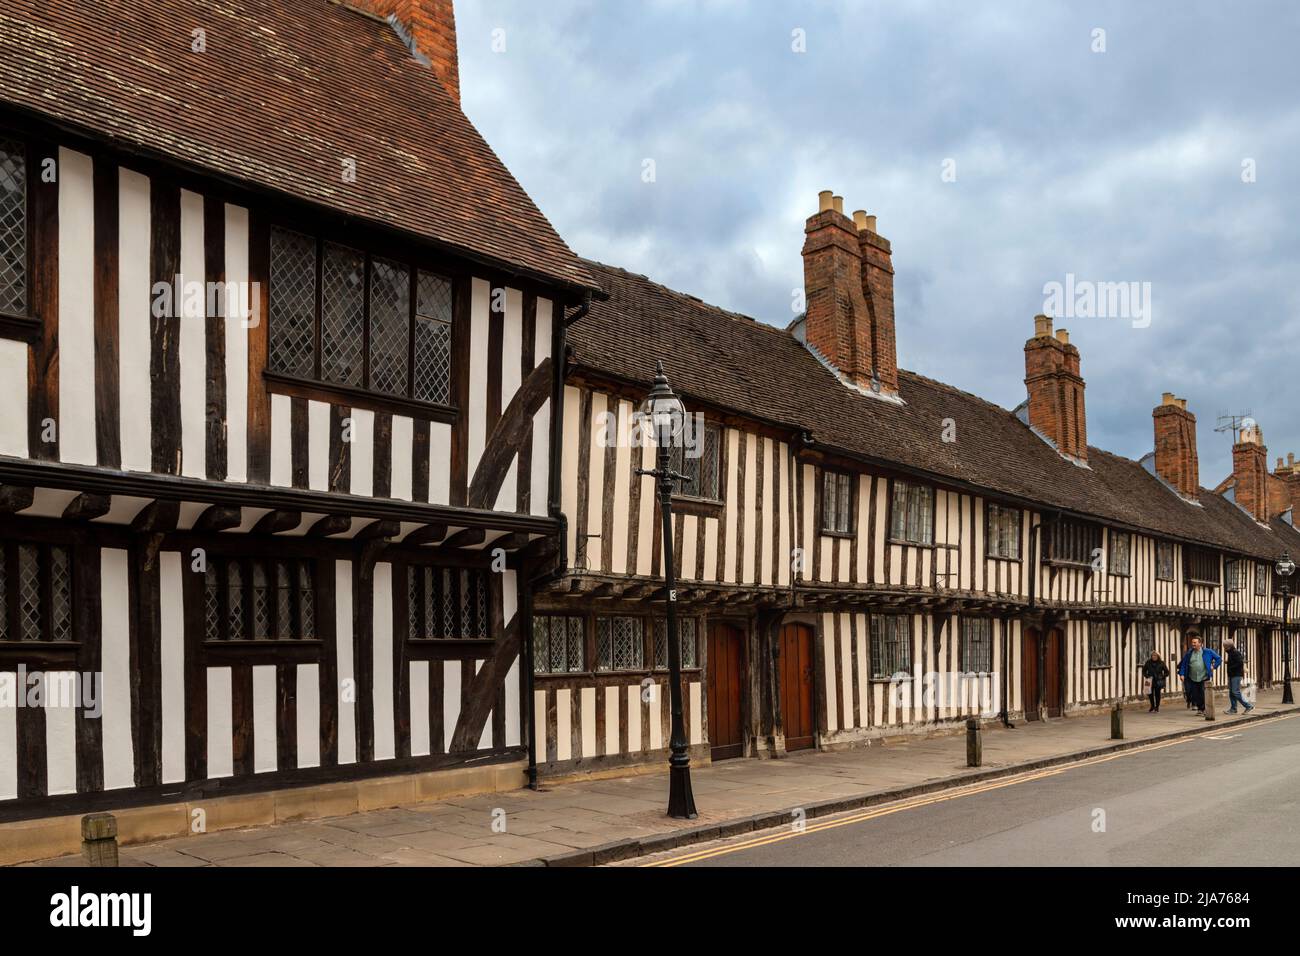 Una hilera de casas de madera del siglo 15th en Church Street, Stratford-upon-Avon, Warwickshire, Inglaterra, Reino Unido. Foto de stock